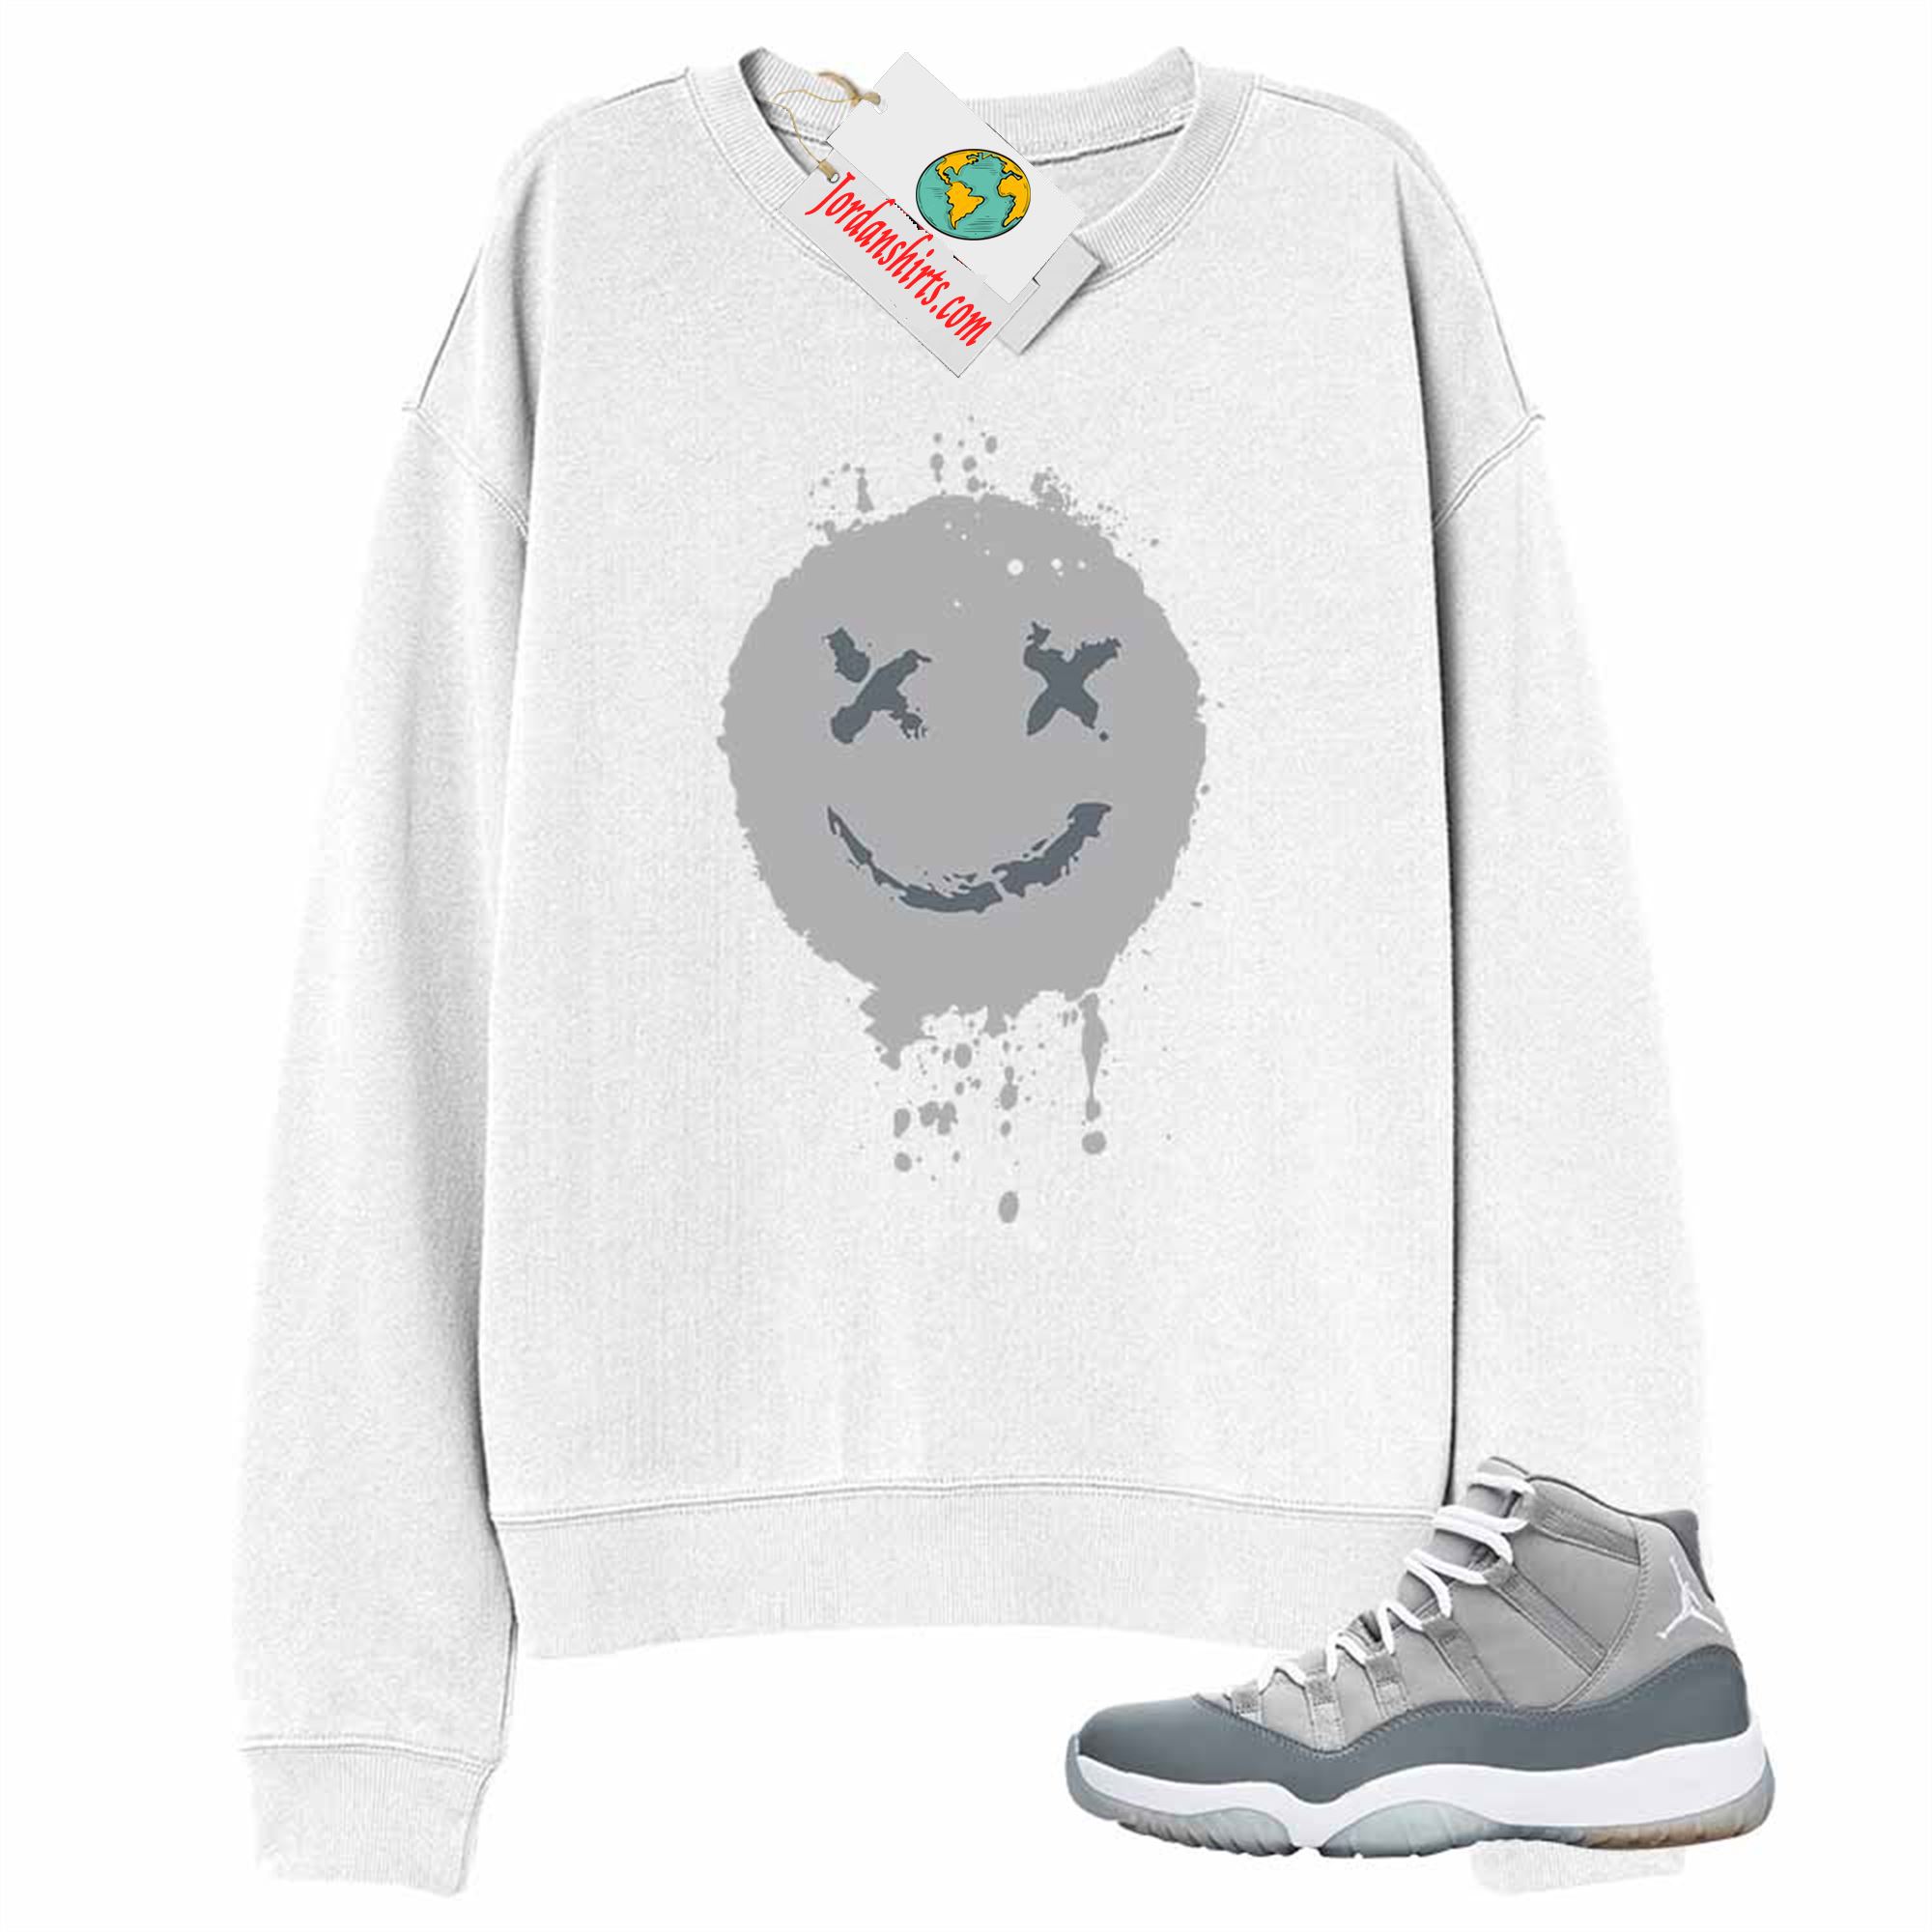 Jordan 11 Sweatshirt, Smile Happy Face White Sweatshirt Air Jordan 11 Cool Grey 11s Plus Size Up To 5xl